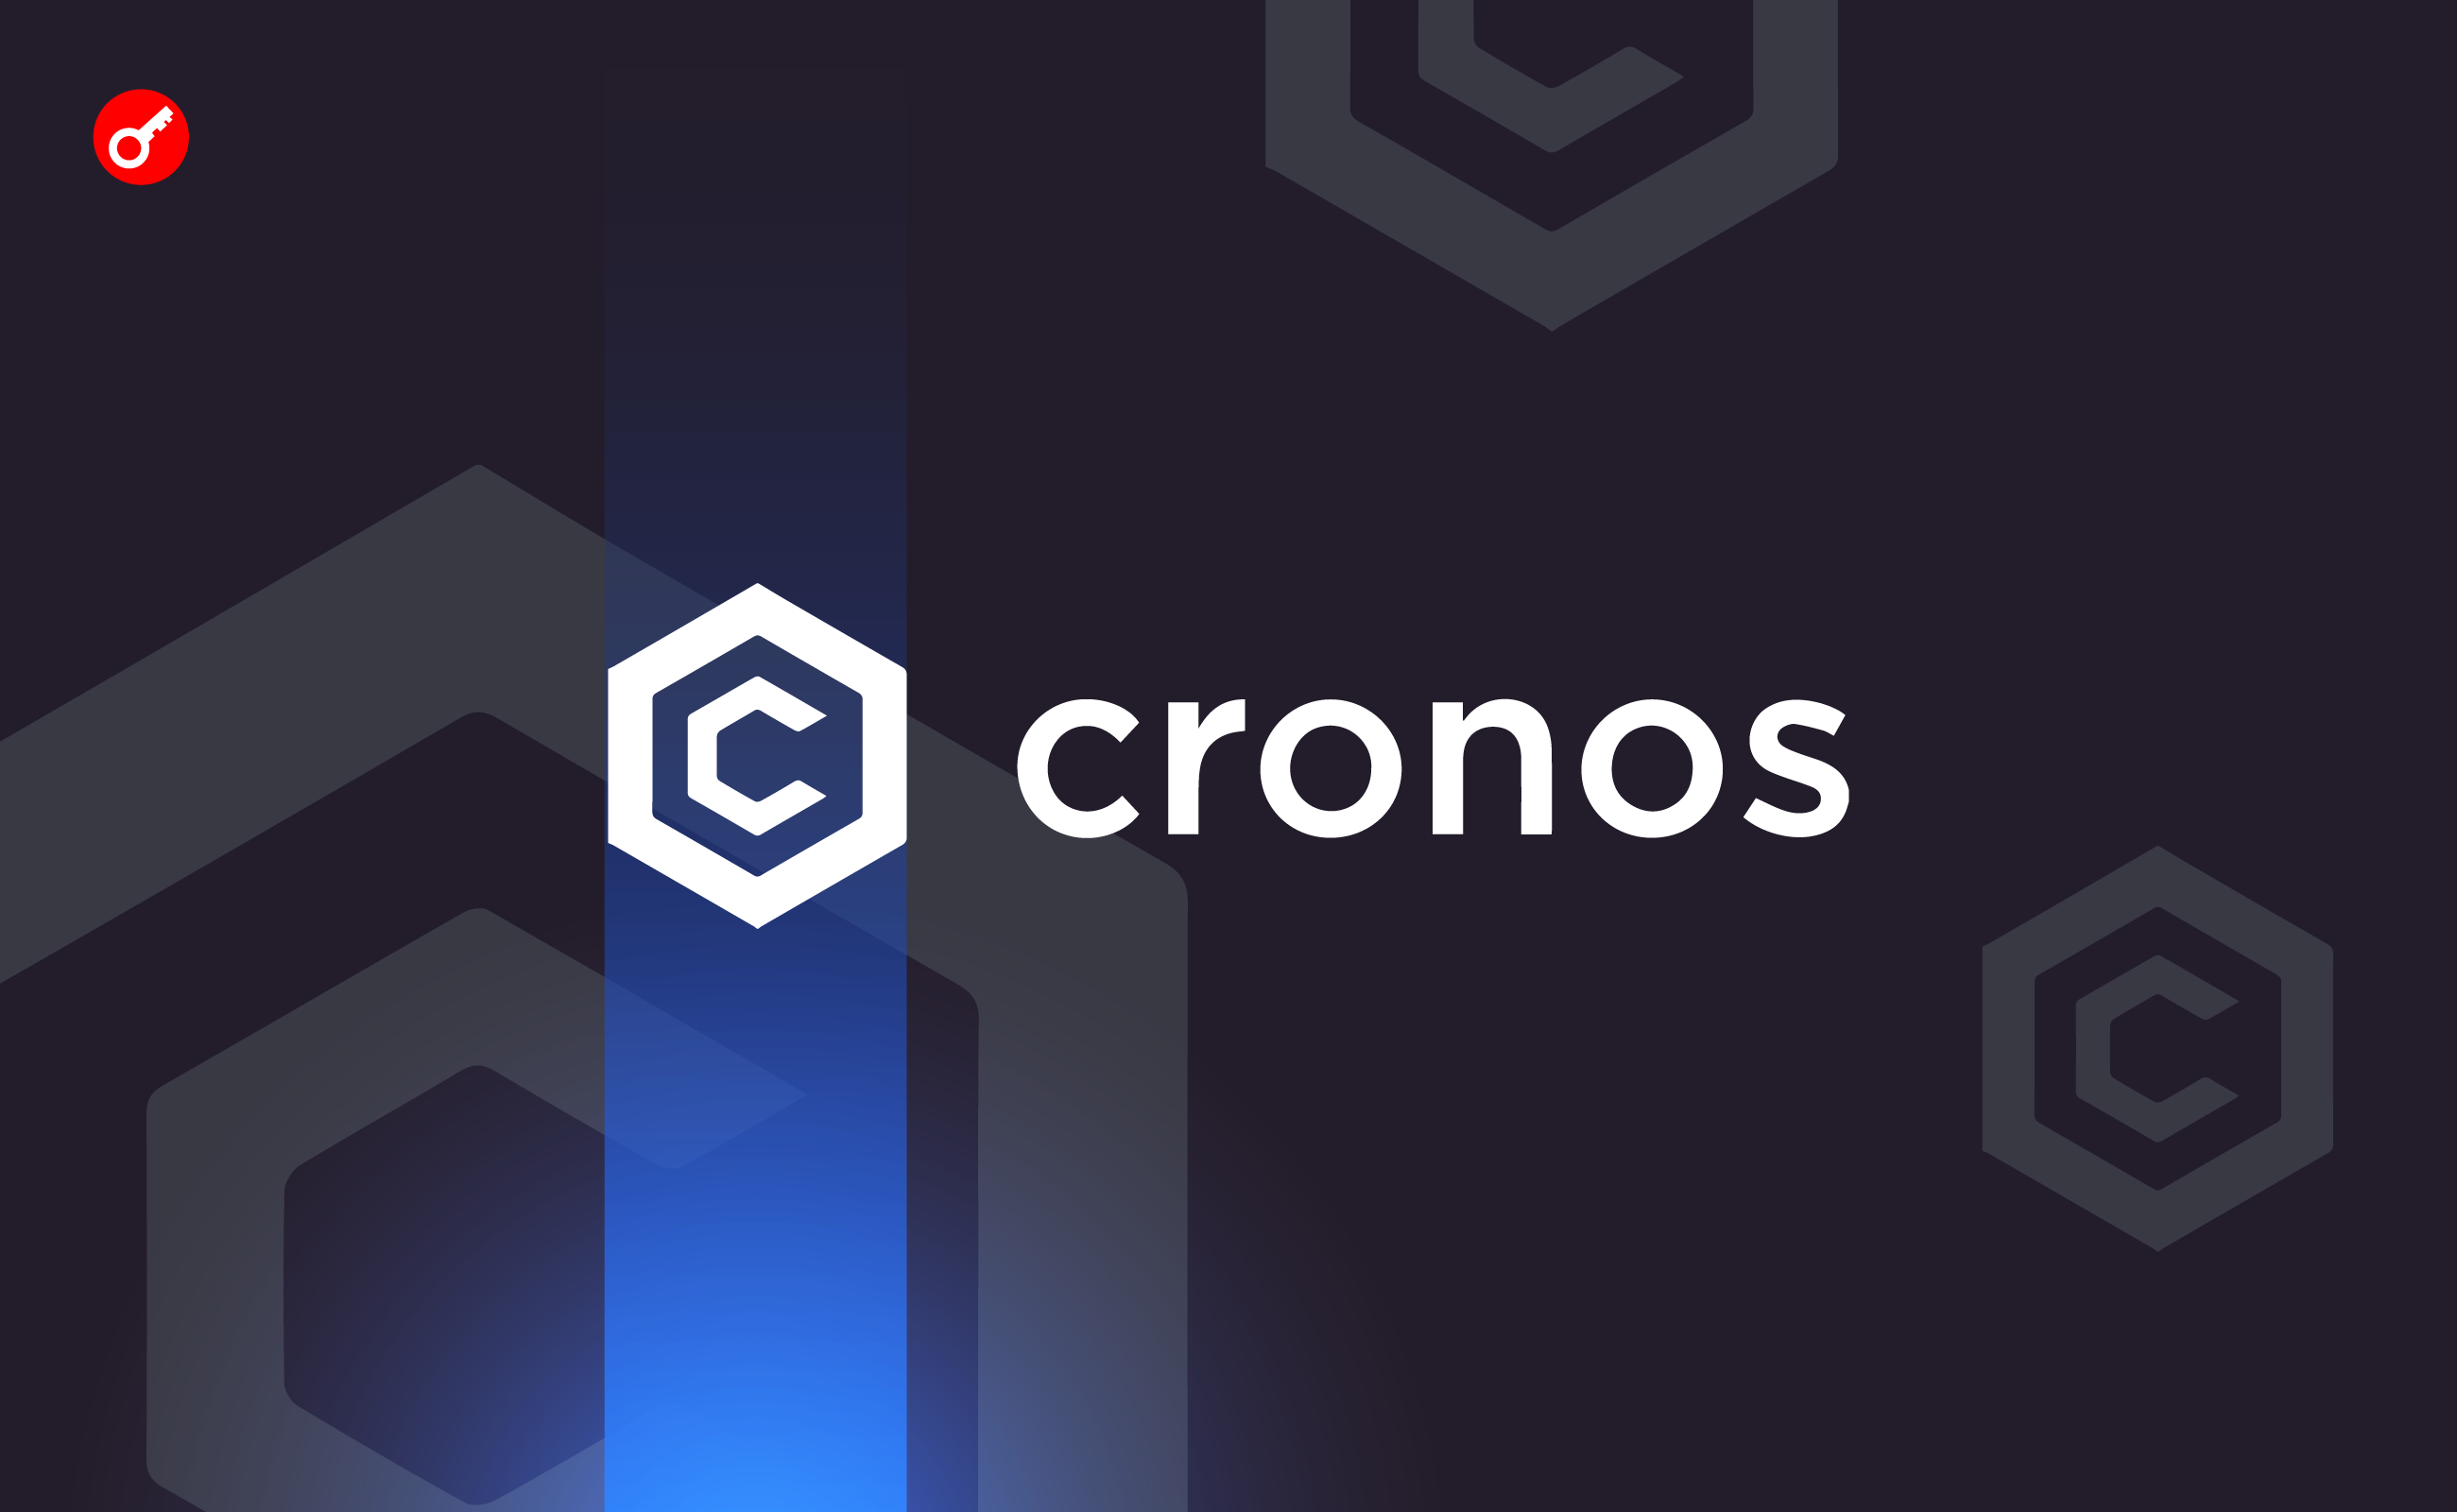 Cronos Labs виділила $100 млн на програму акселерації. Головний колаж новини.